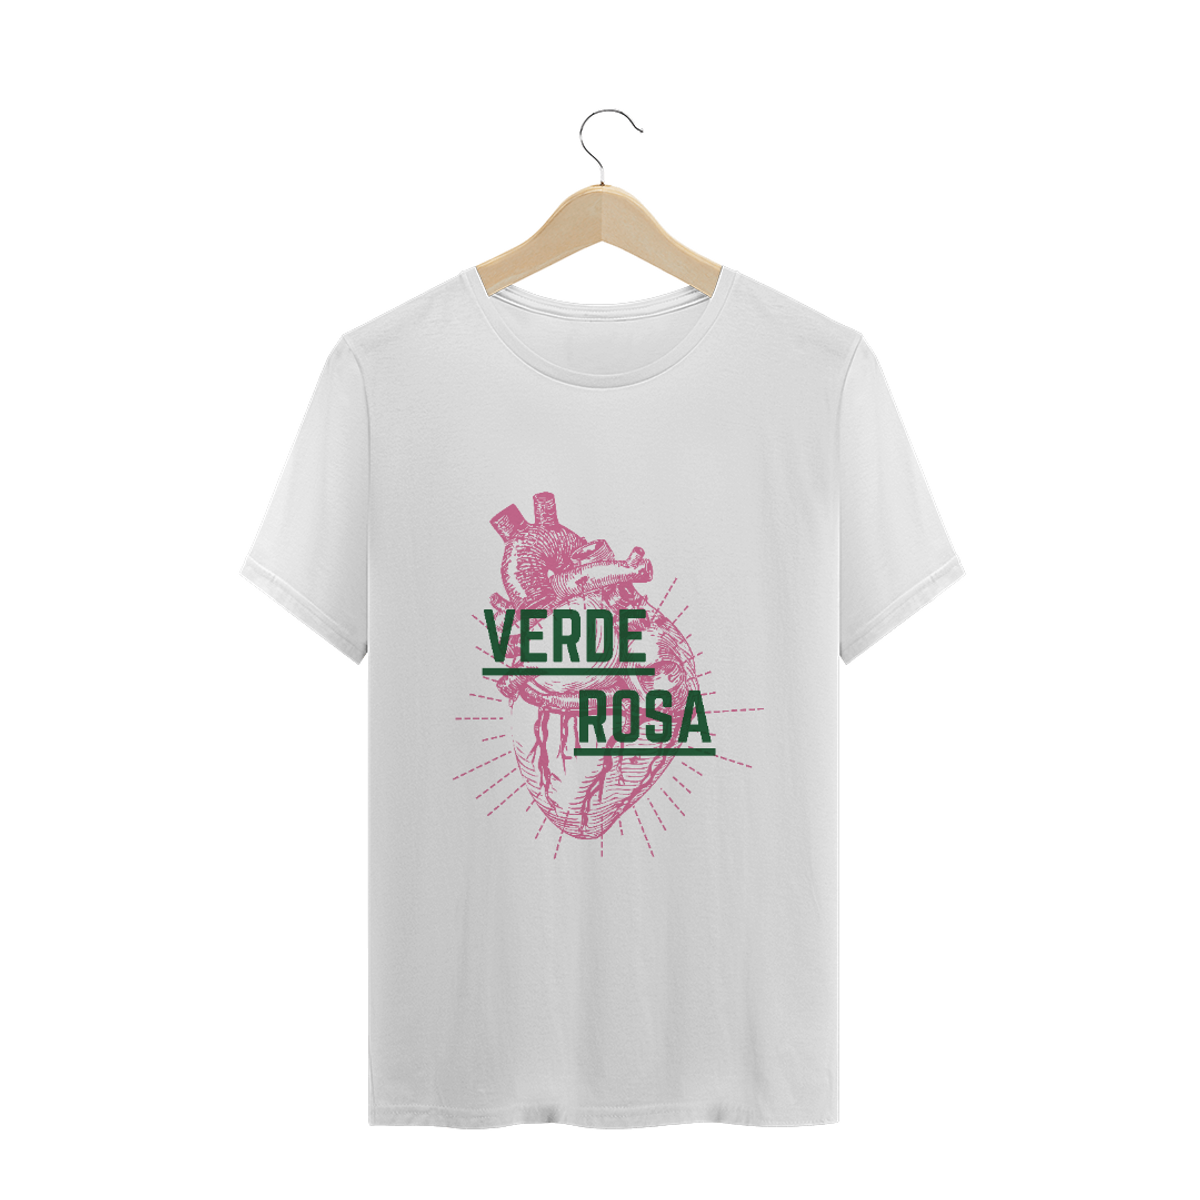 Nome do produto: Camiseta Coração Verde e Rosa